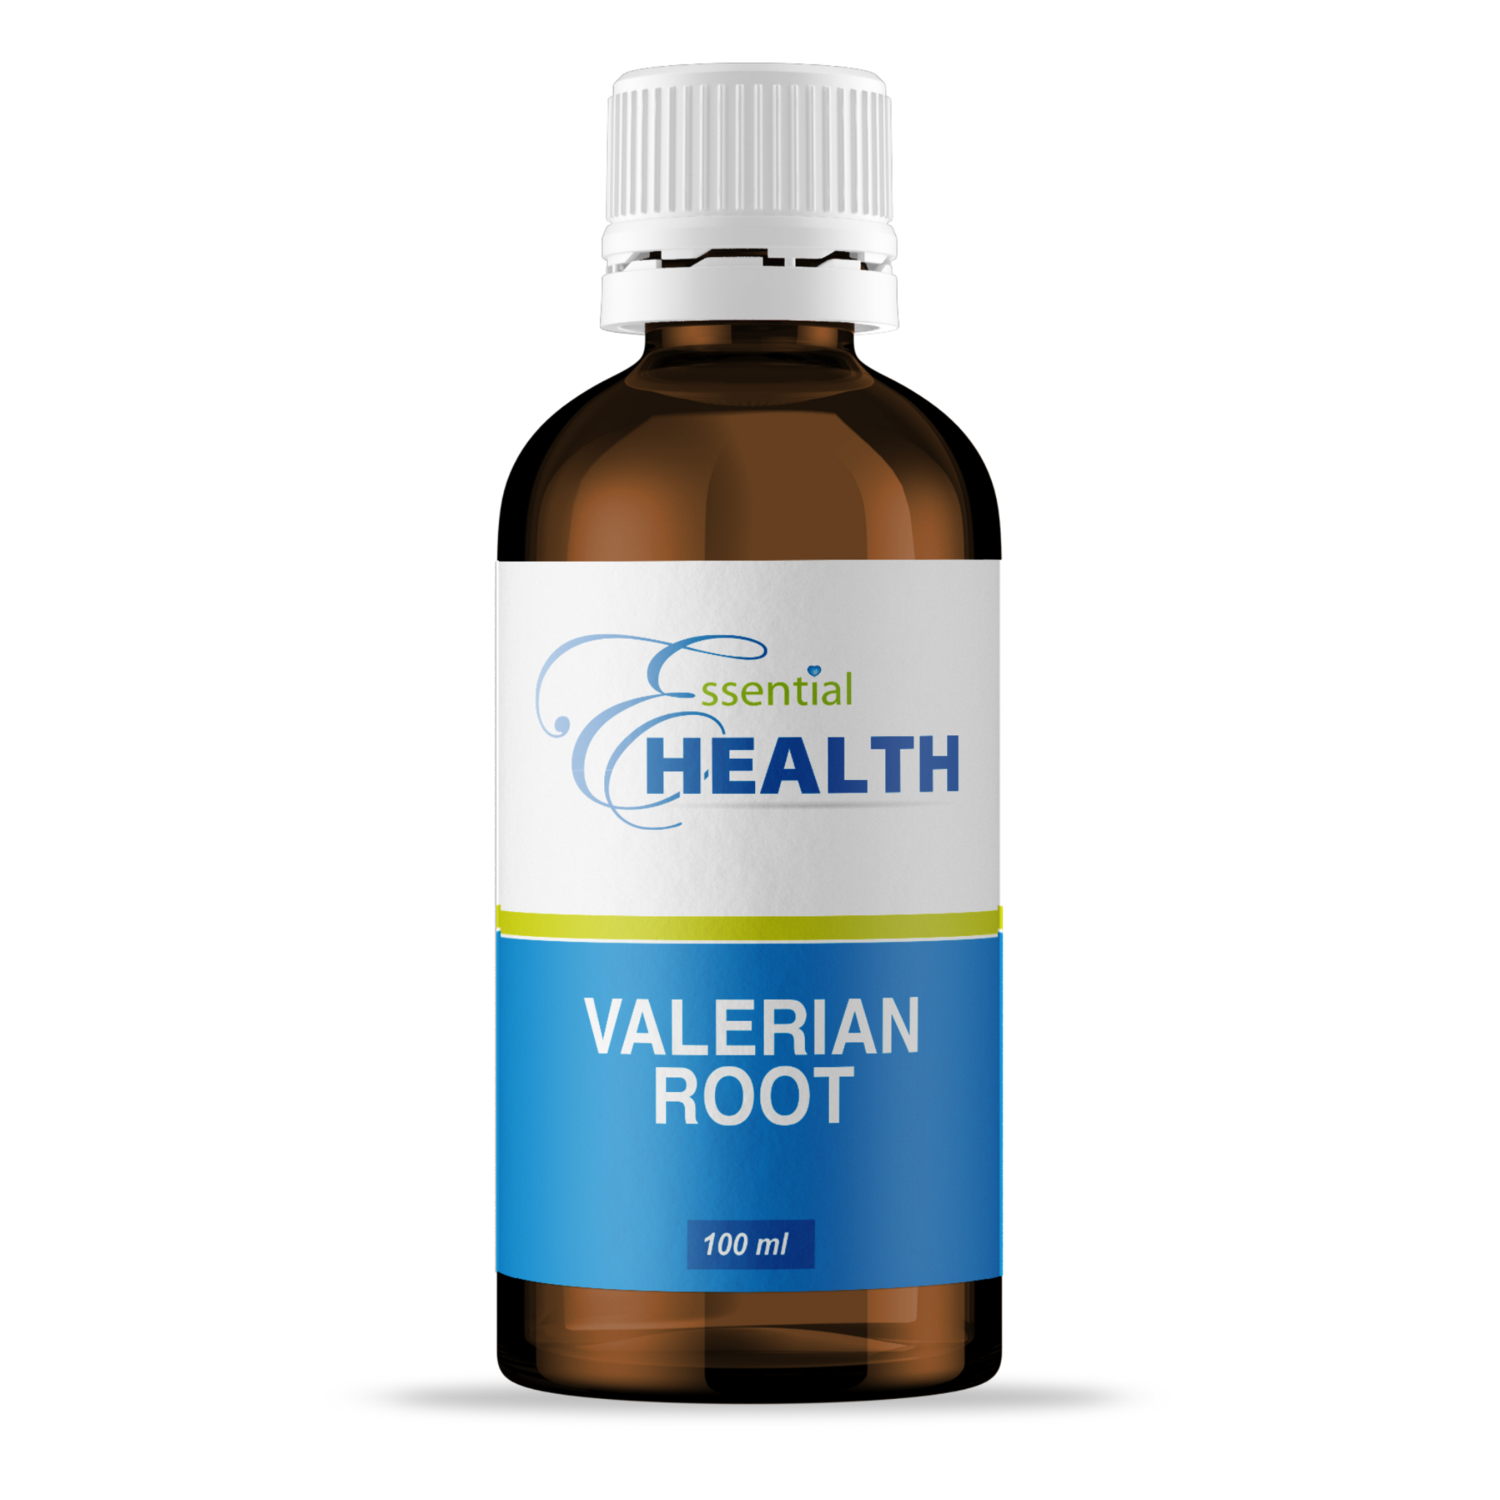 Essential Health Valerian Root 100ml